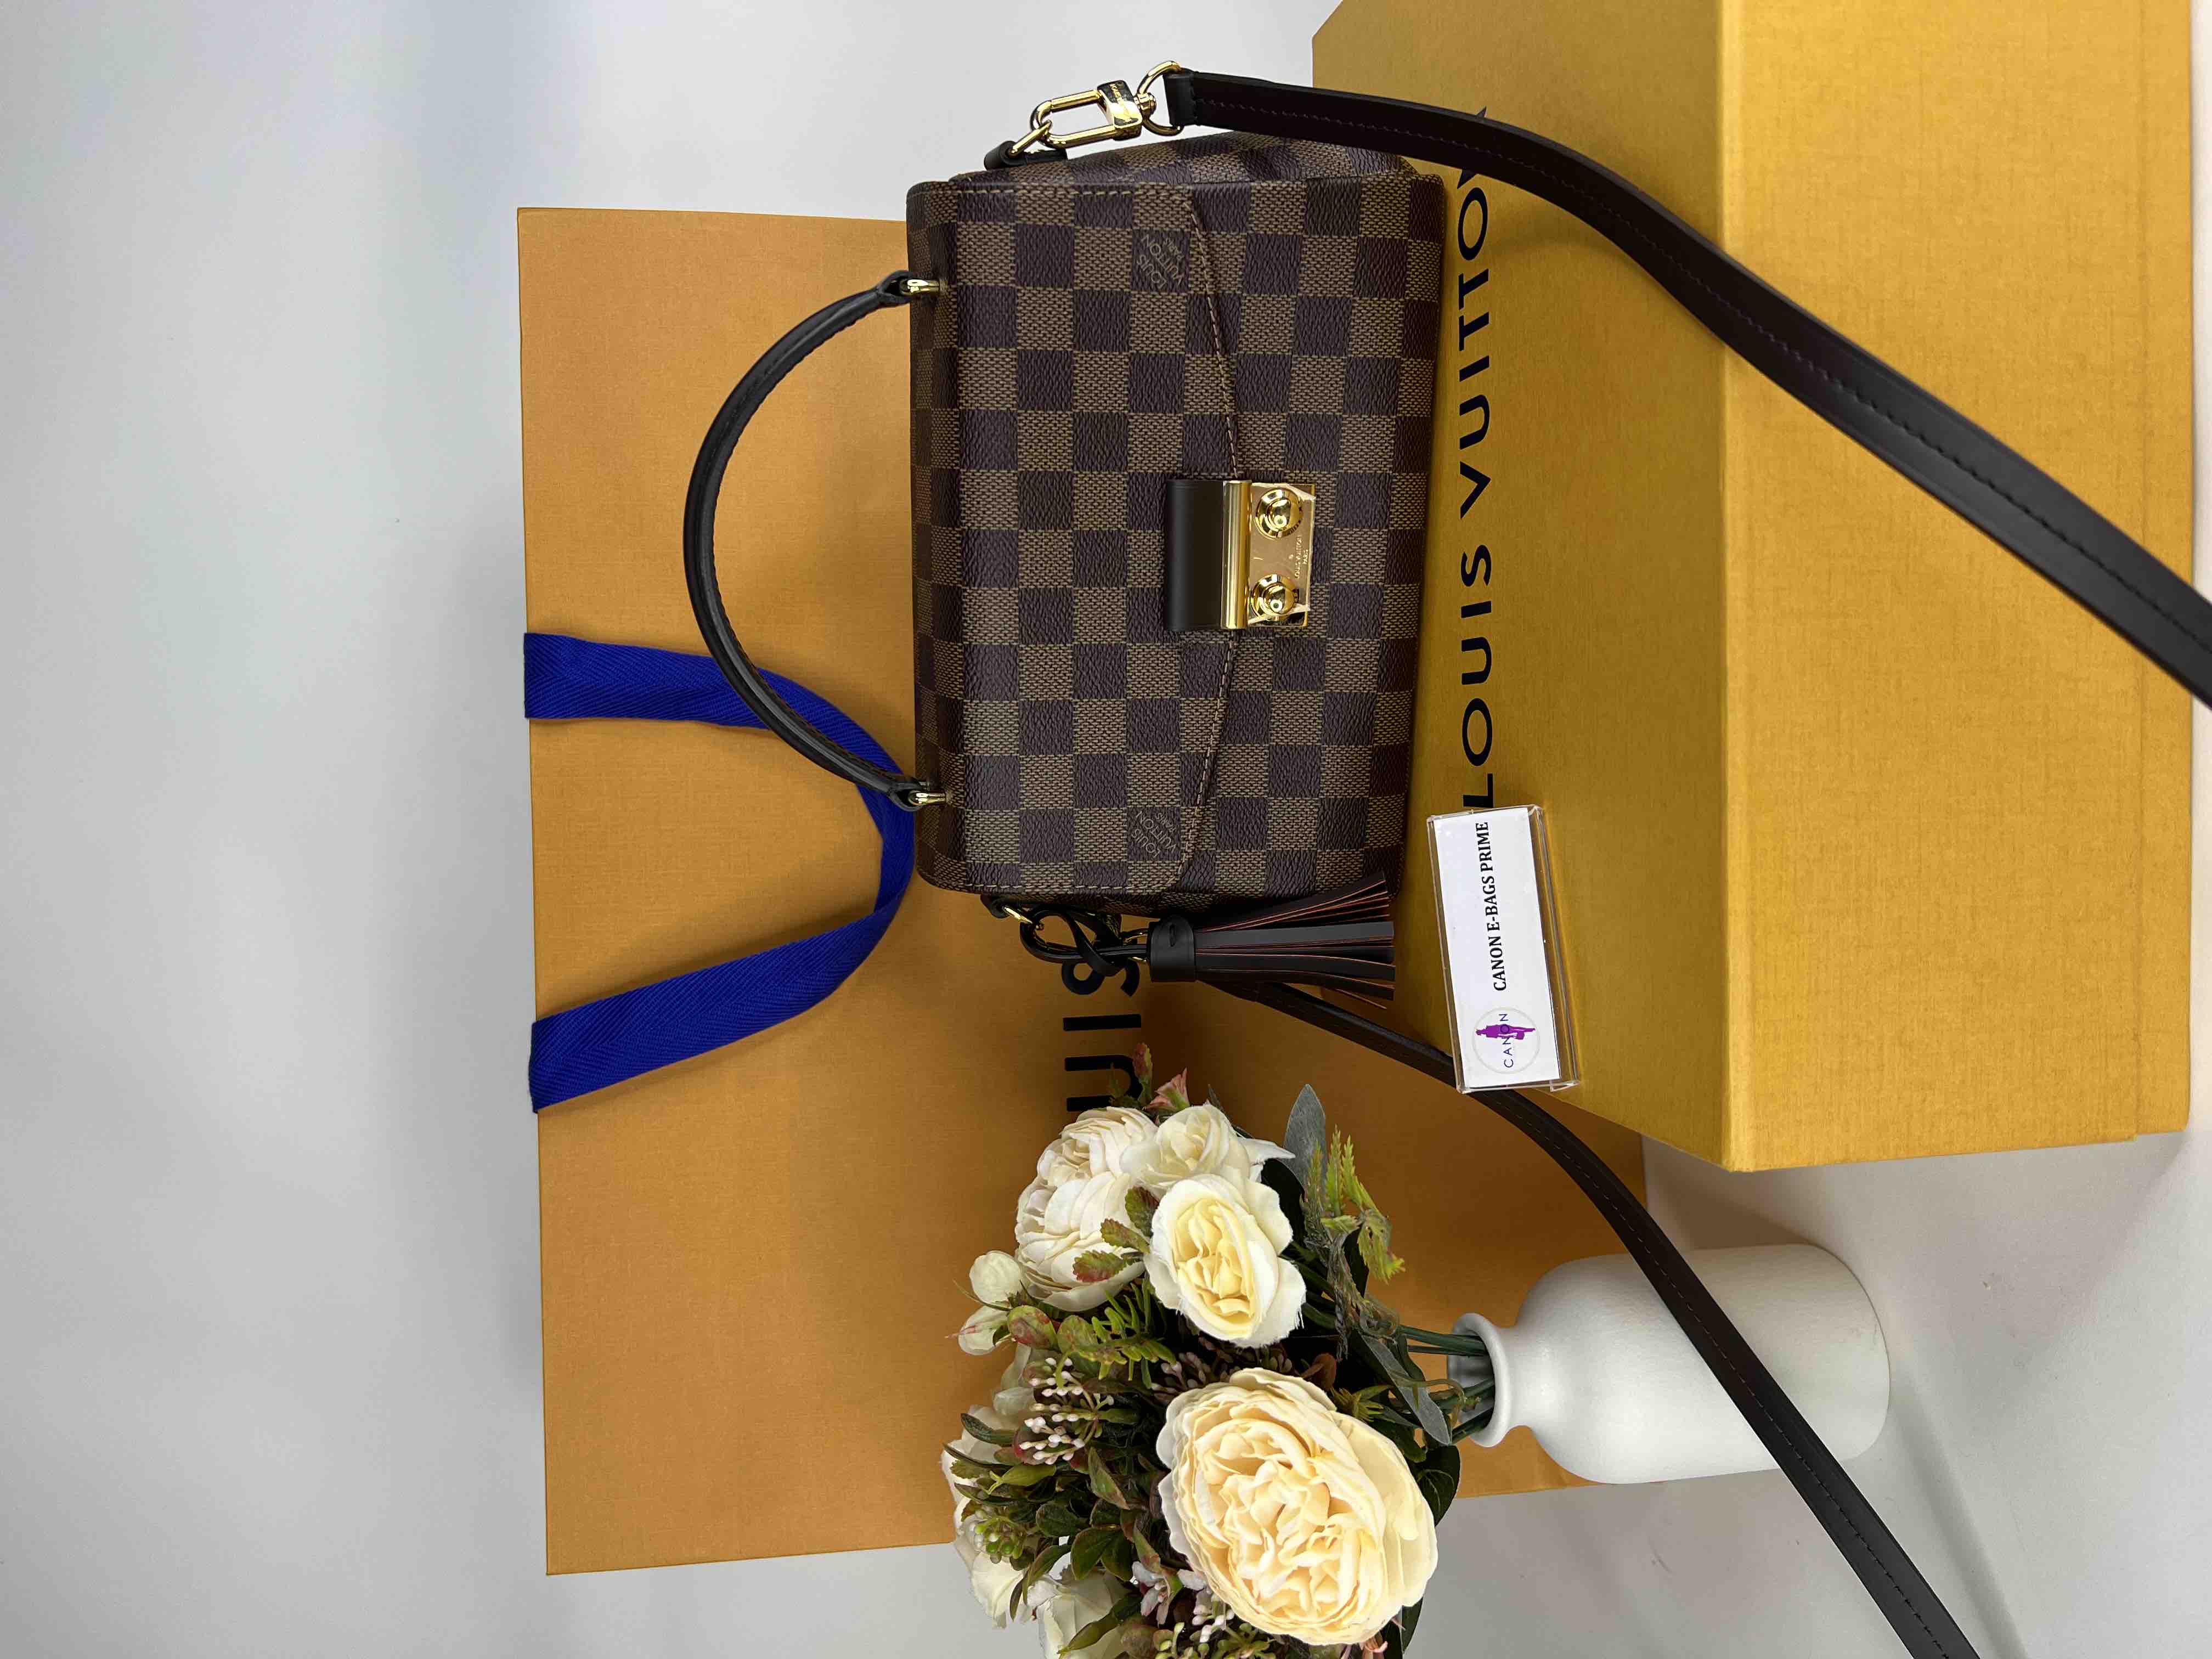 Louis Vuitton Contre M01 Travel Spray Perfume - Canon E-Bags Prime